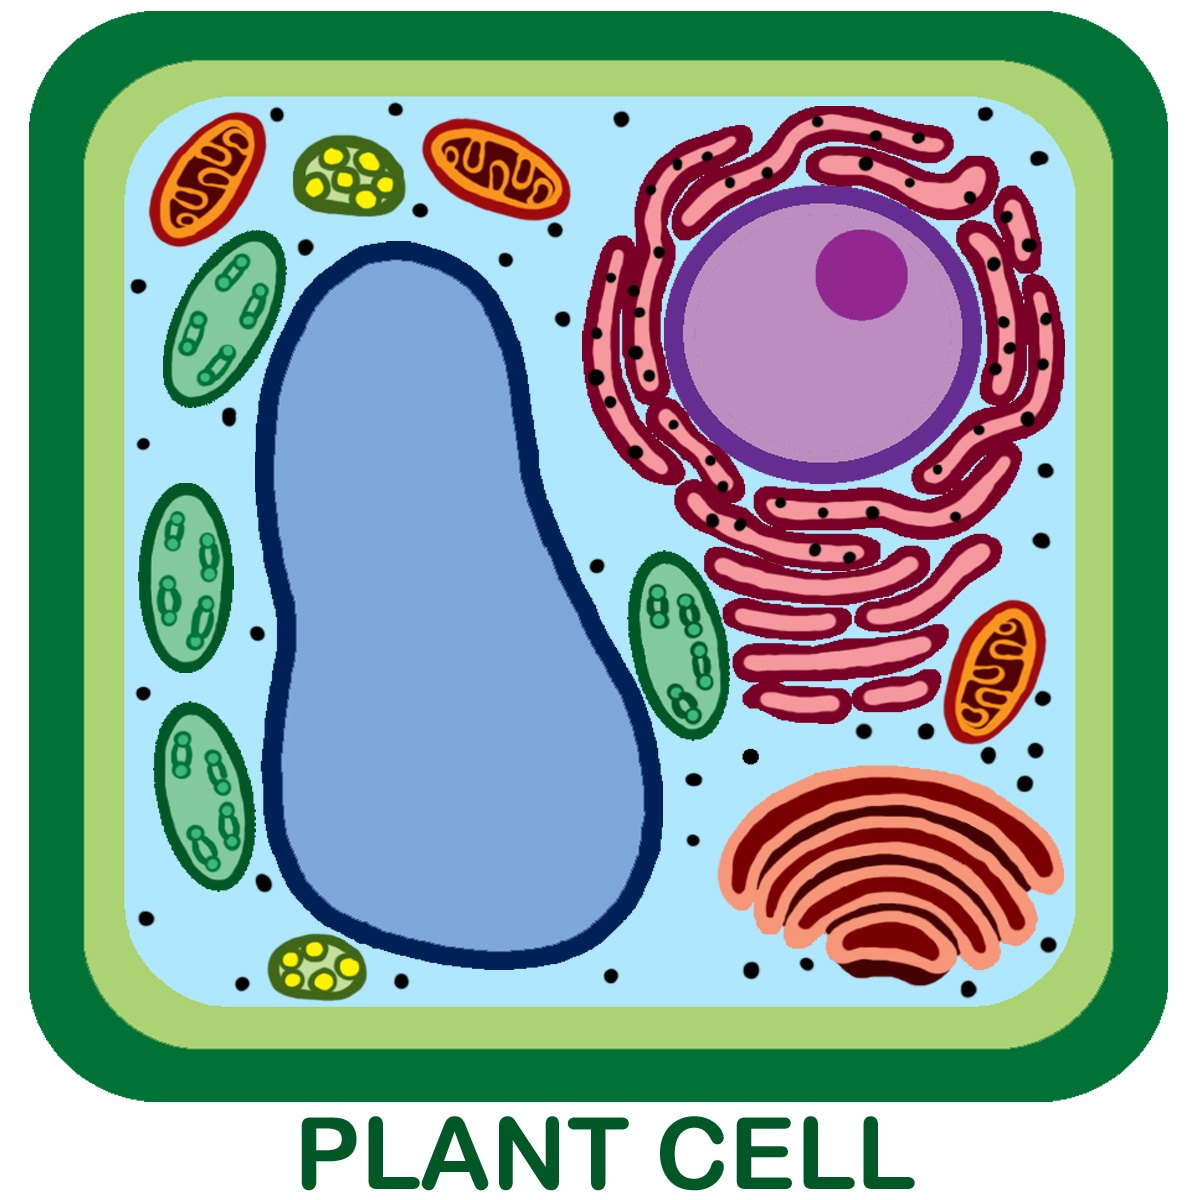 Unlabeled Plant Cell Pic 1 : 3 Unlabeled Plant Cell Pictures ...